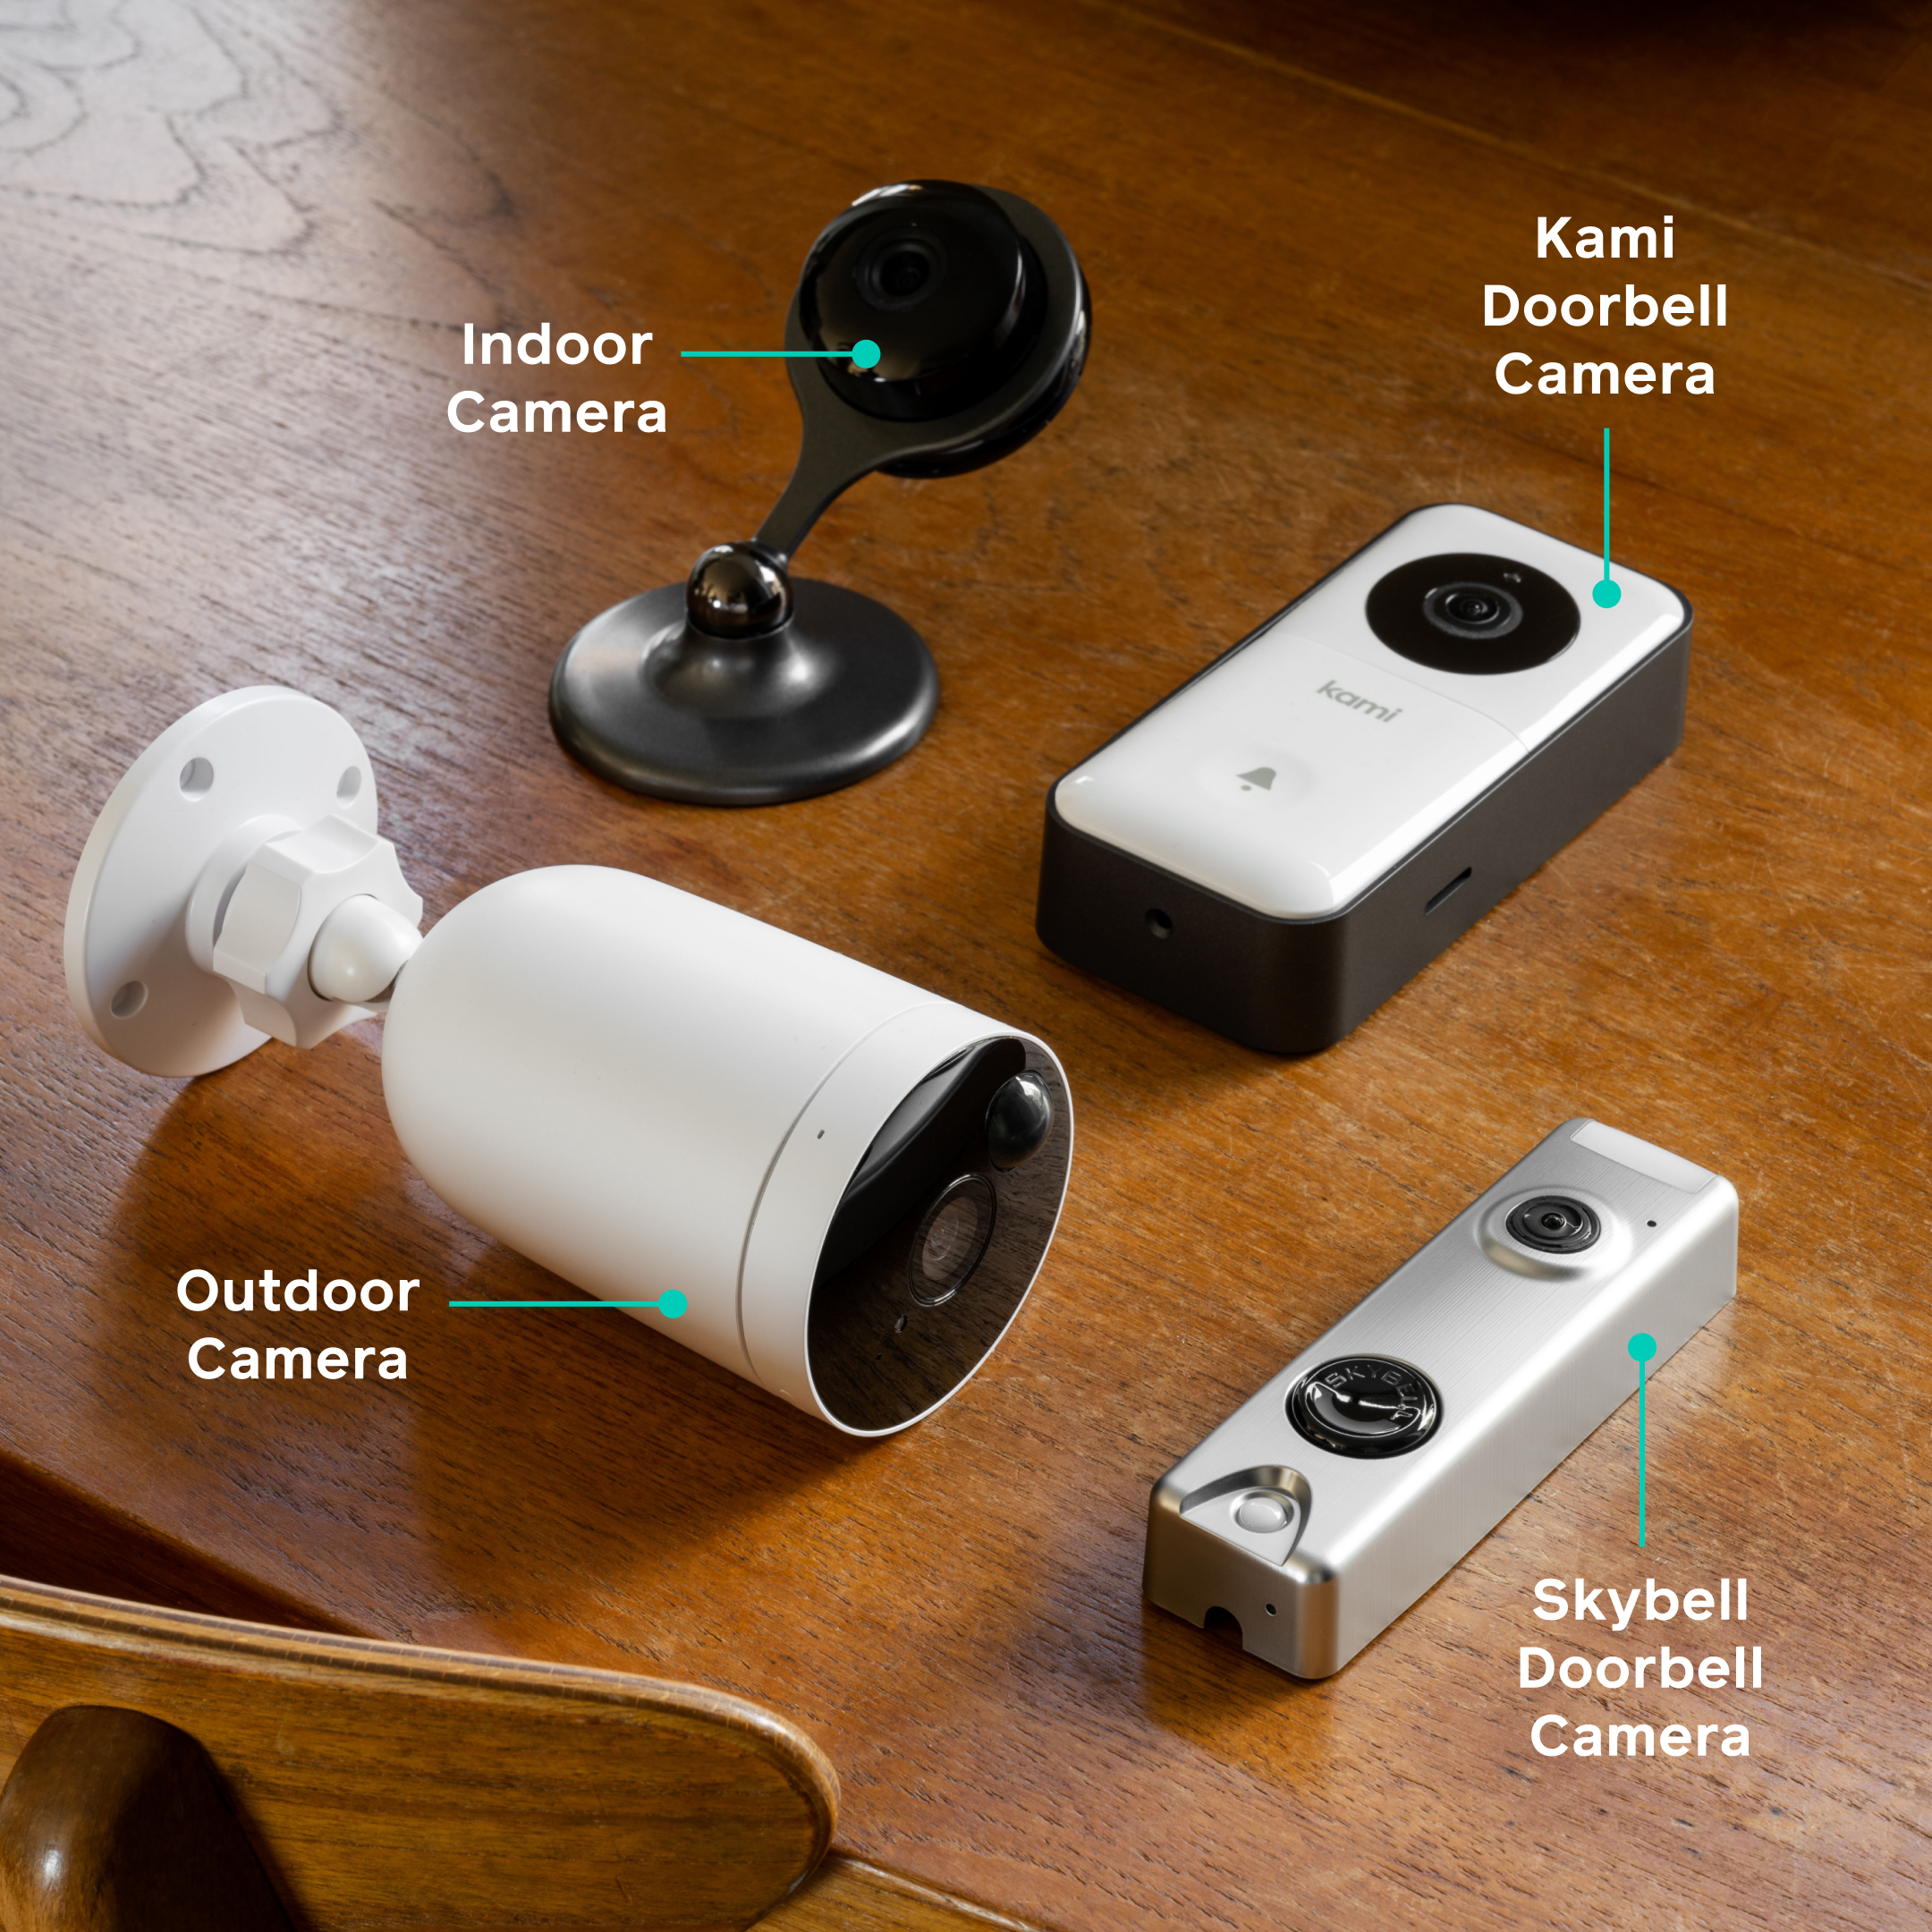 Indoor Cameras, Outdoor Cameras, Doorbell Cameras